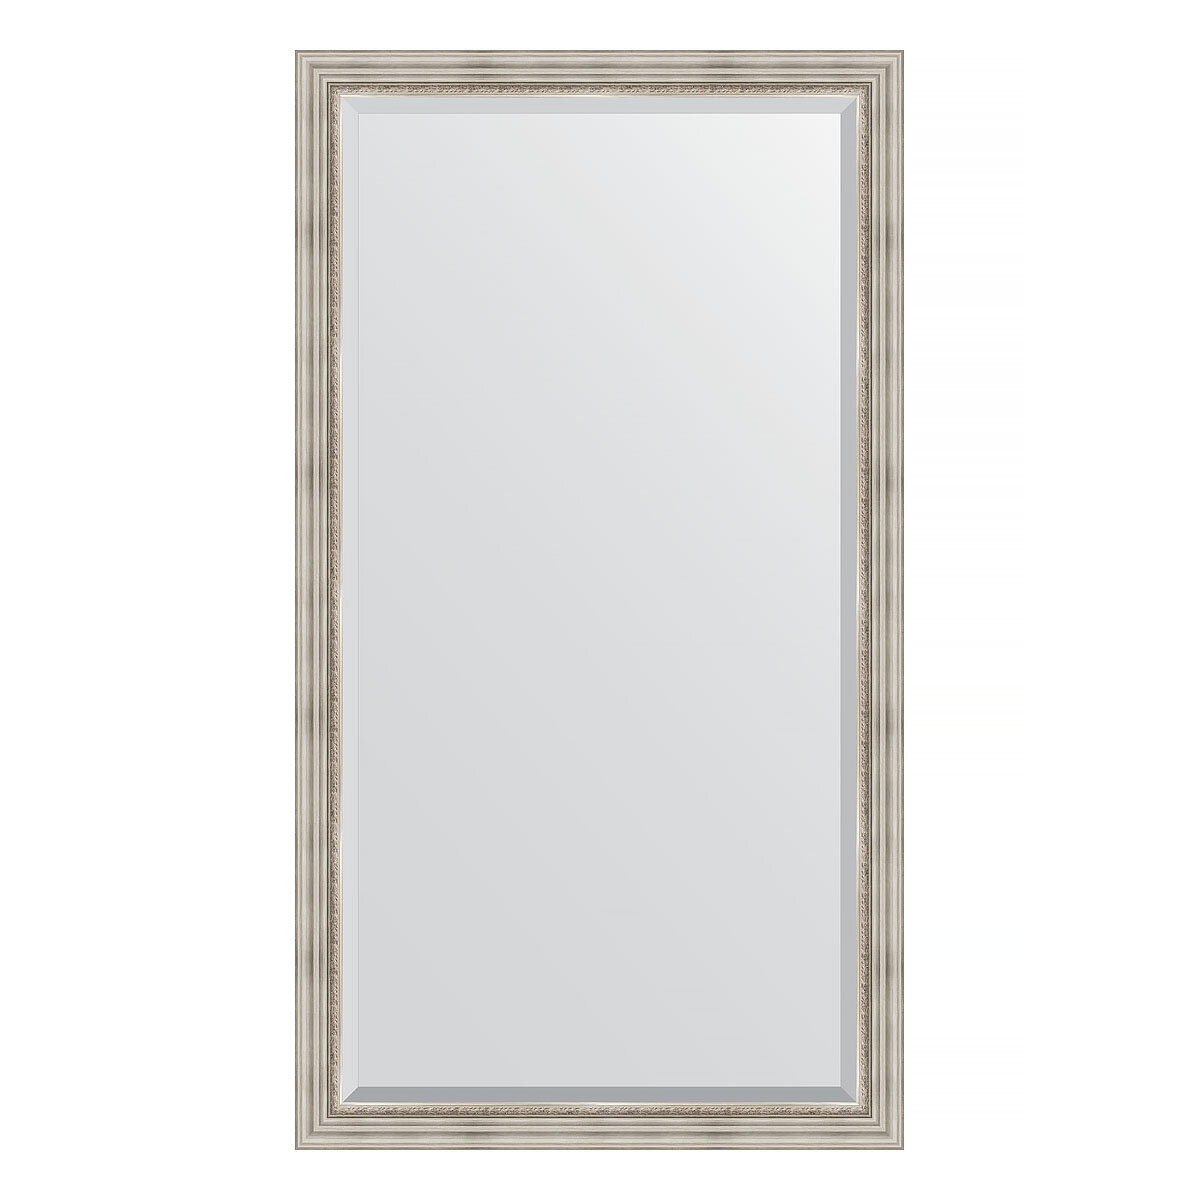 Зеркало напольное с фацетом EVOFORM в багетной раме римское серебро, 111х201 см, для гостиной, прихожей, кабинета, спальни и ванной комнаты, BY 6158